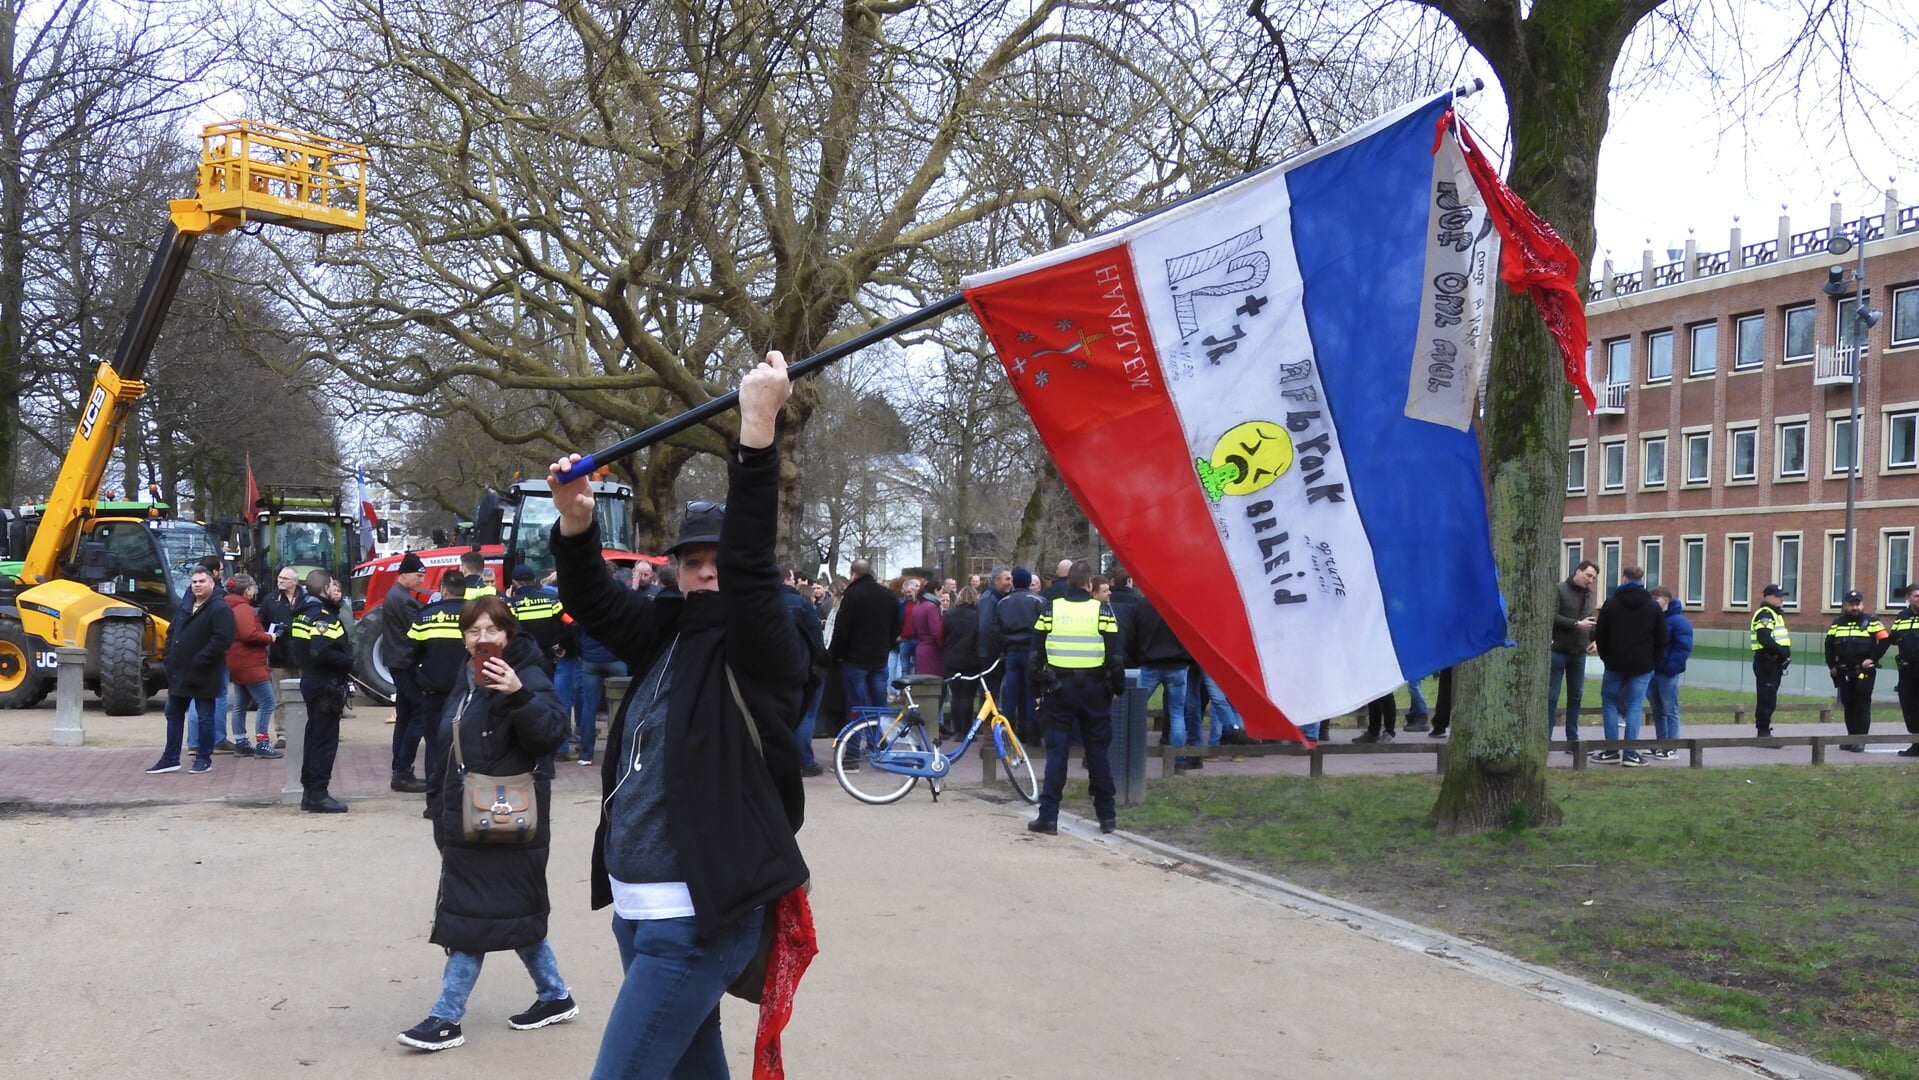 Het protest in Haarlem verliep rustig,